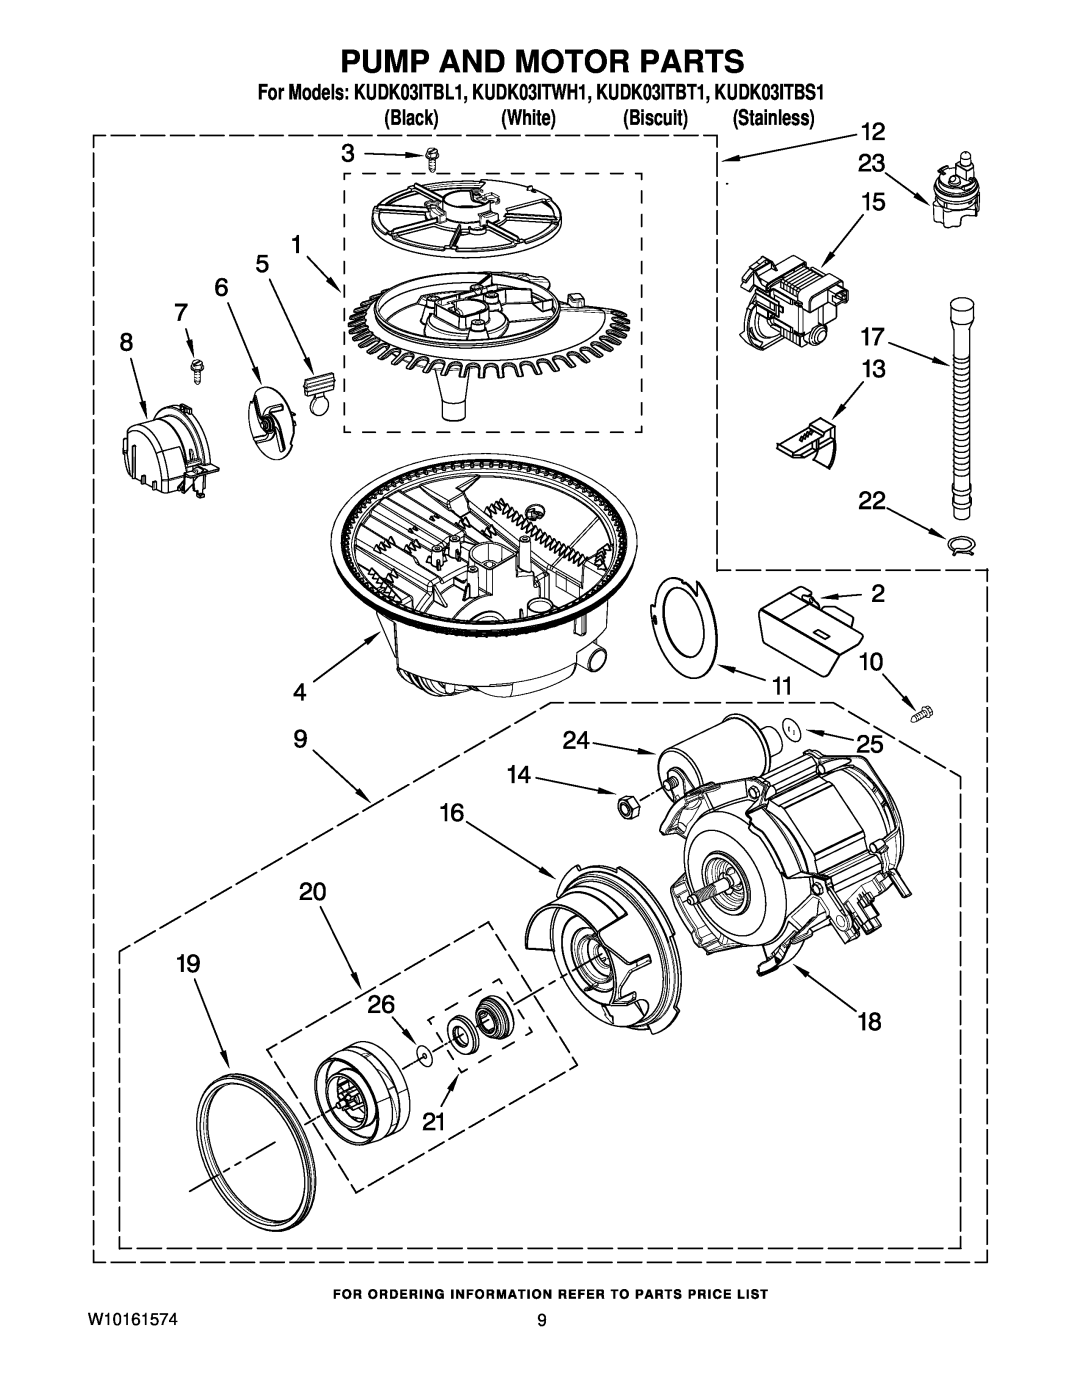 KitchenAid manual Pump And Motor Parts, For Models KUDK03ITBL1, KUDK03ITWH1, KUDK03ITBT1, KUDK03ITBS1 